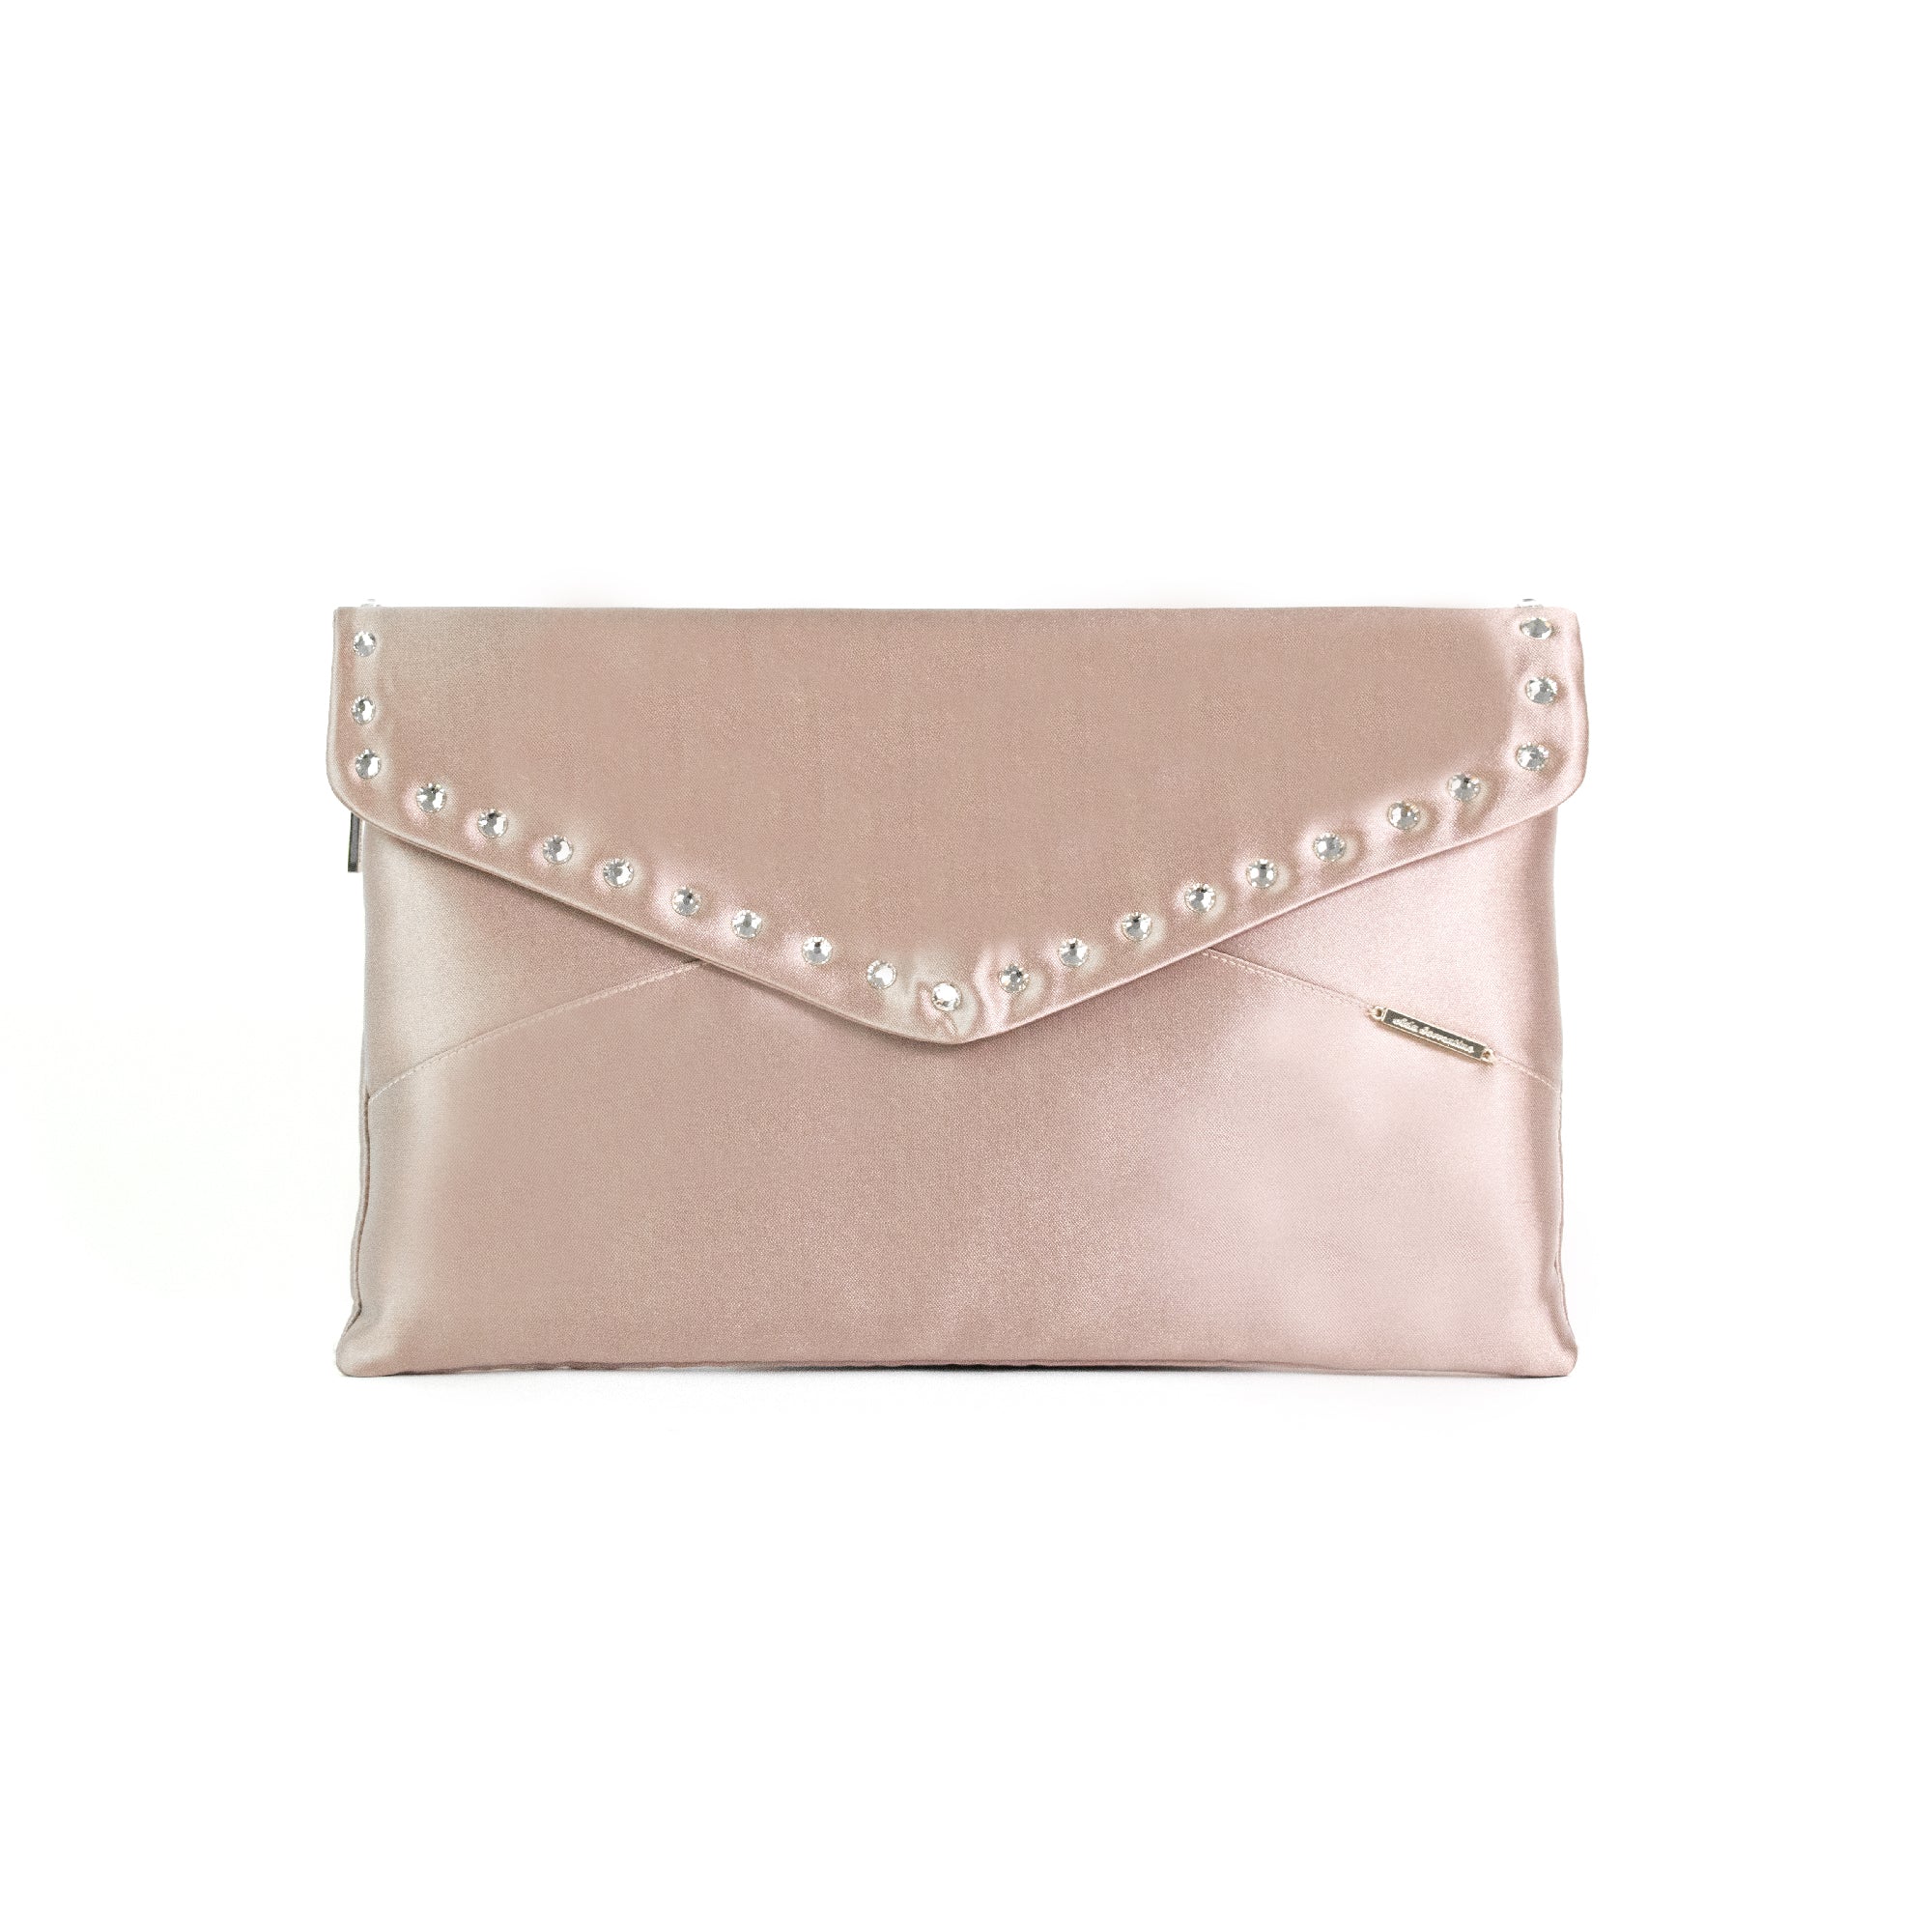 Powder pink clutch bag with Swarovski